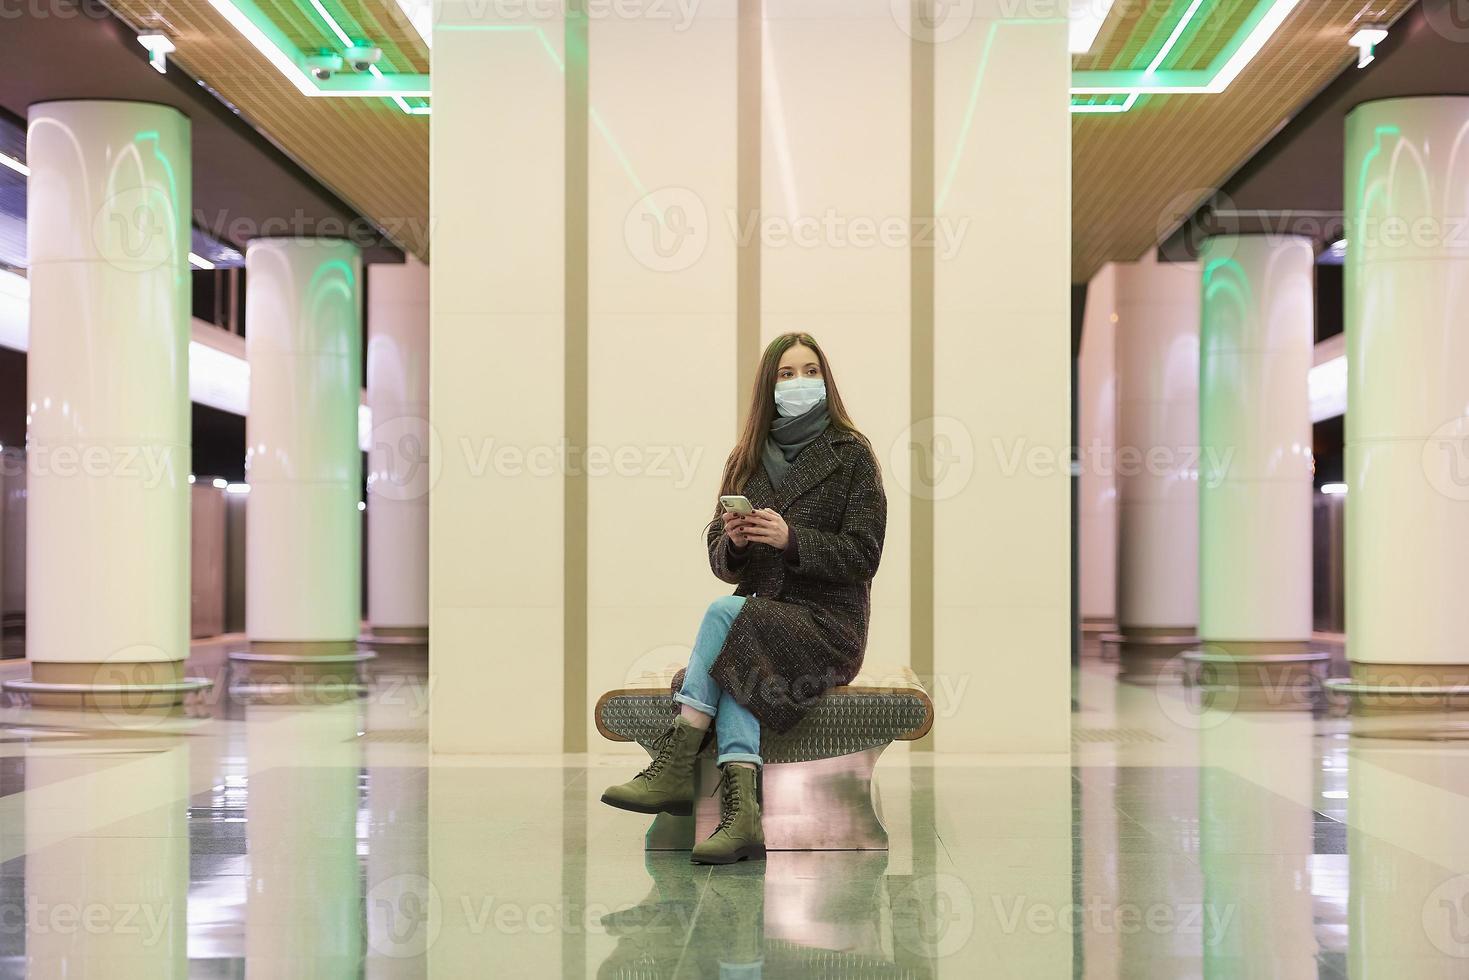 uma mulher com uma máscara facial à espera de um trem e segurando um smartphone foto